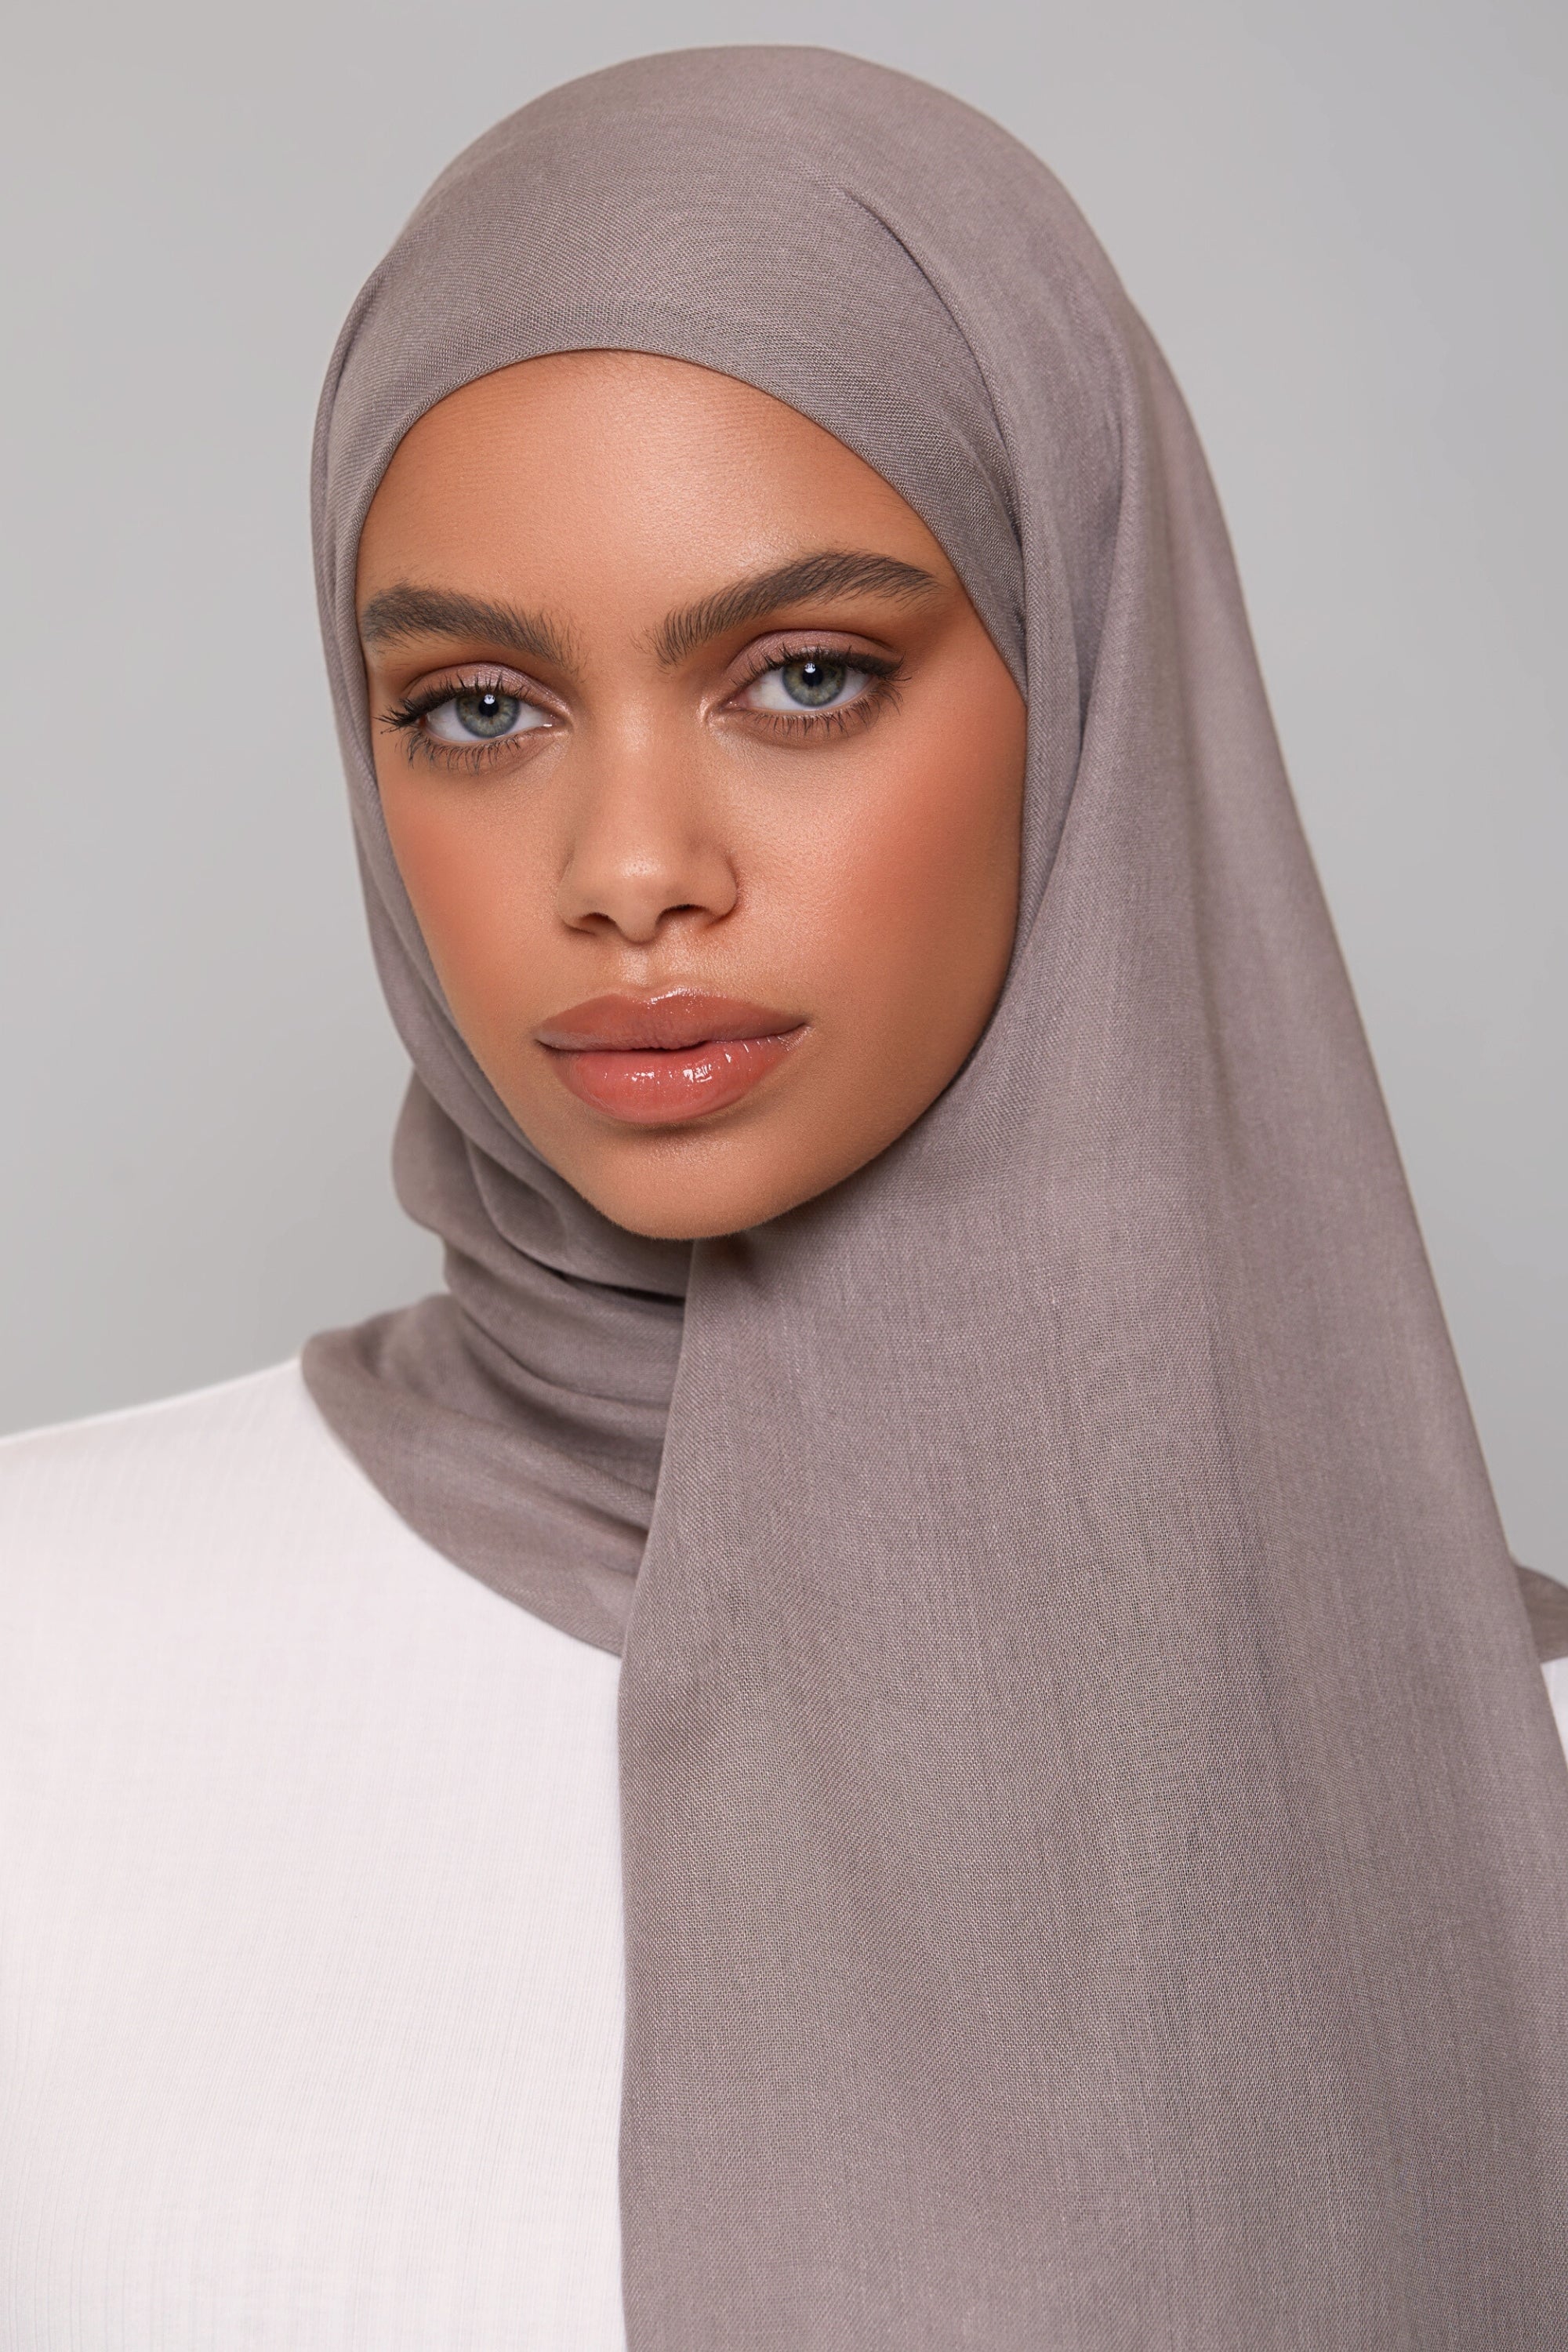 Modal Hijab - Pebble epschoolboard 